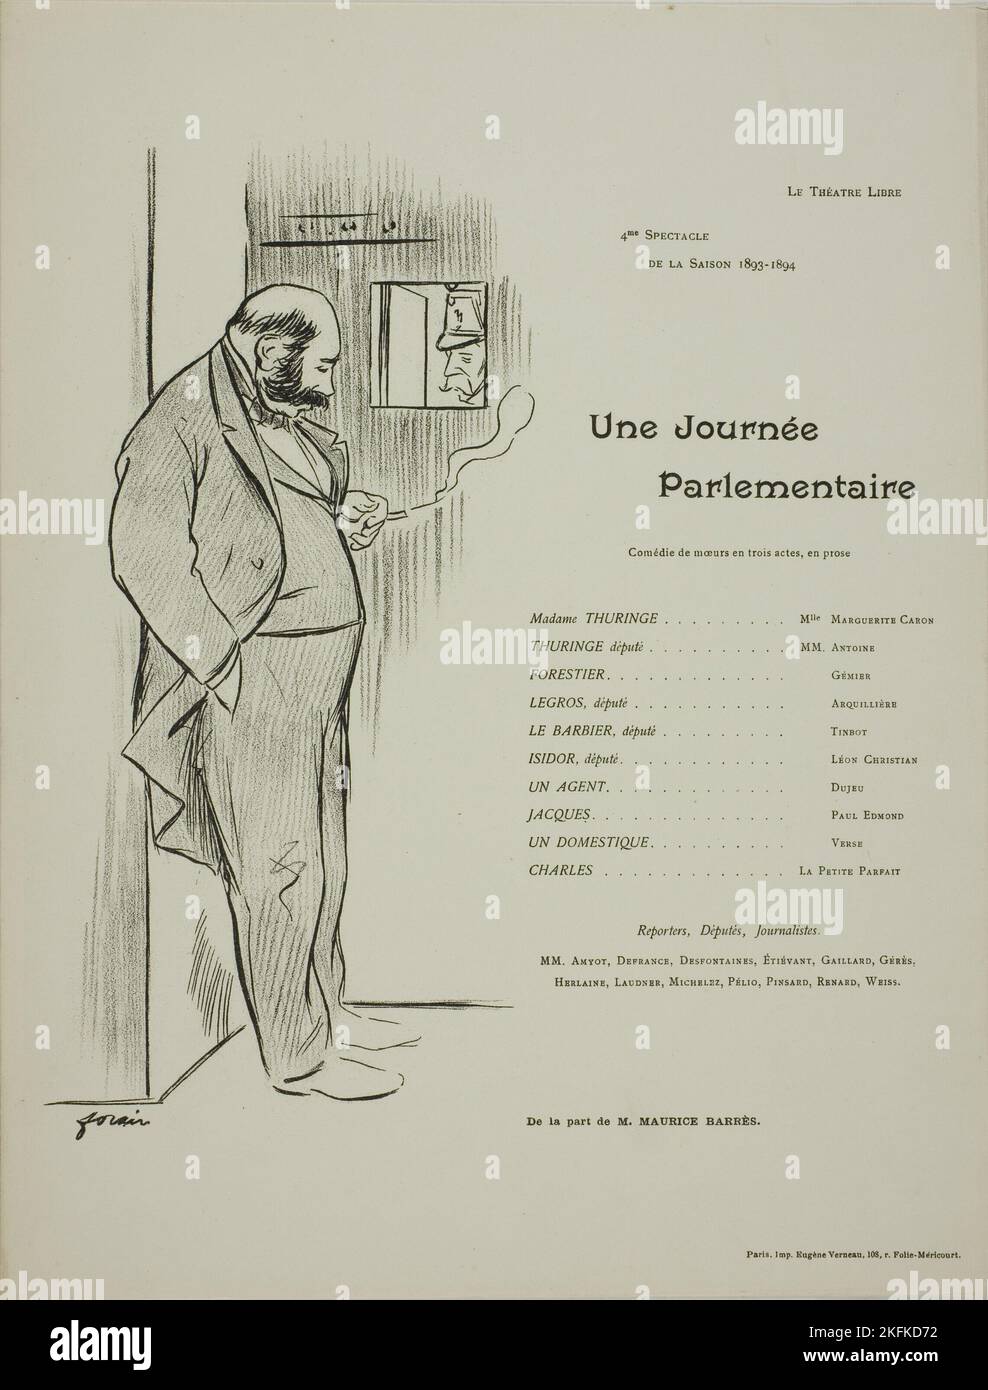 Programme de théâtre pour l'une Voyage parlementaire, 1893&#x2013;94. Banque D'Images